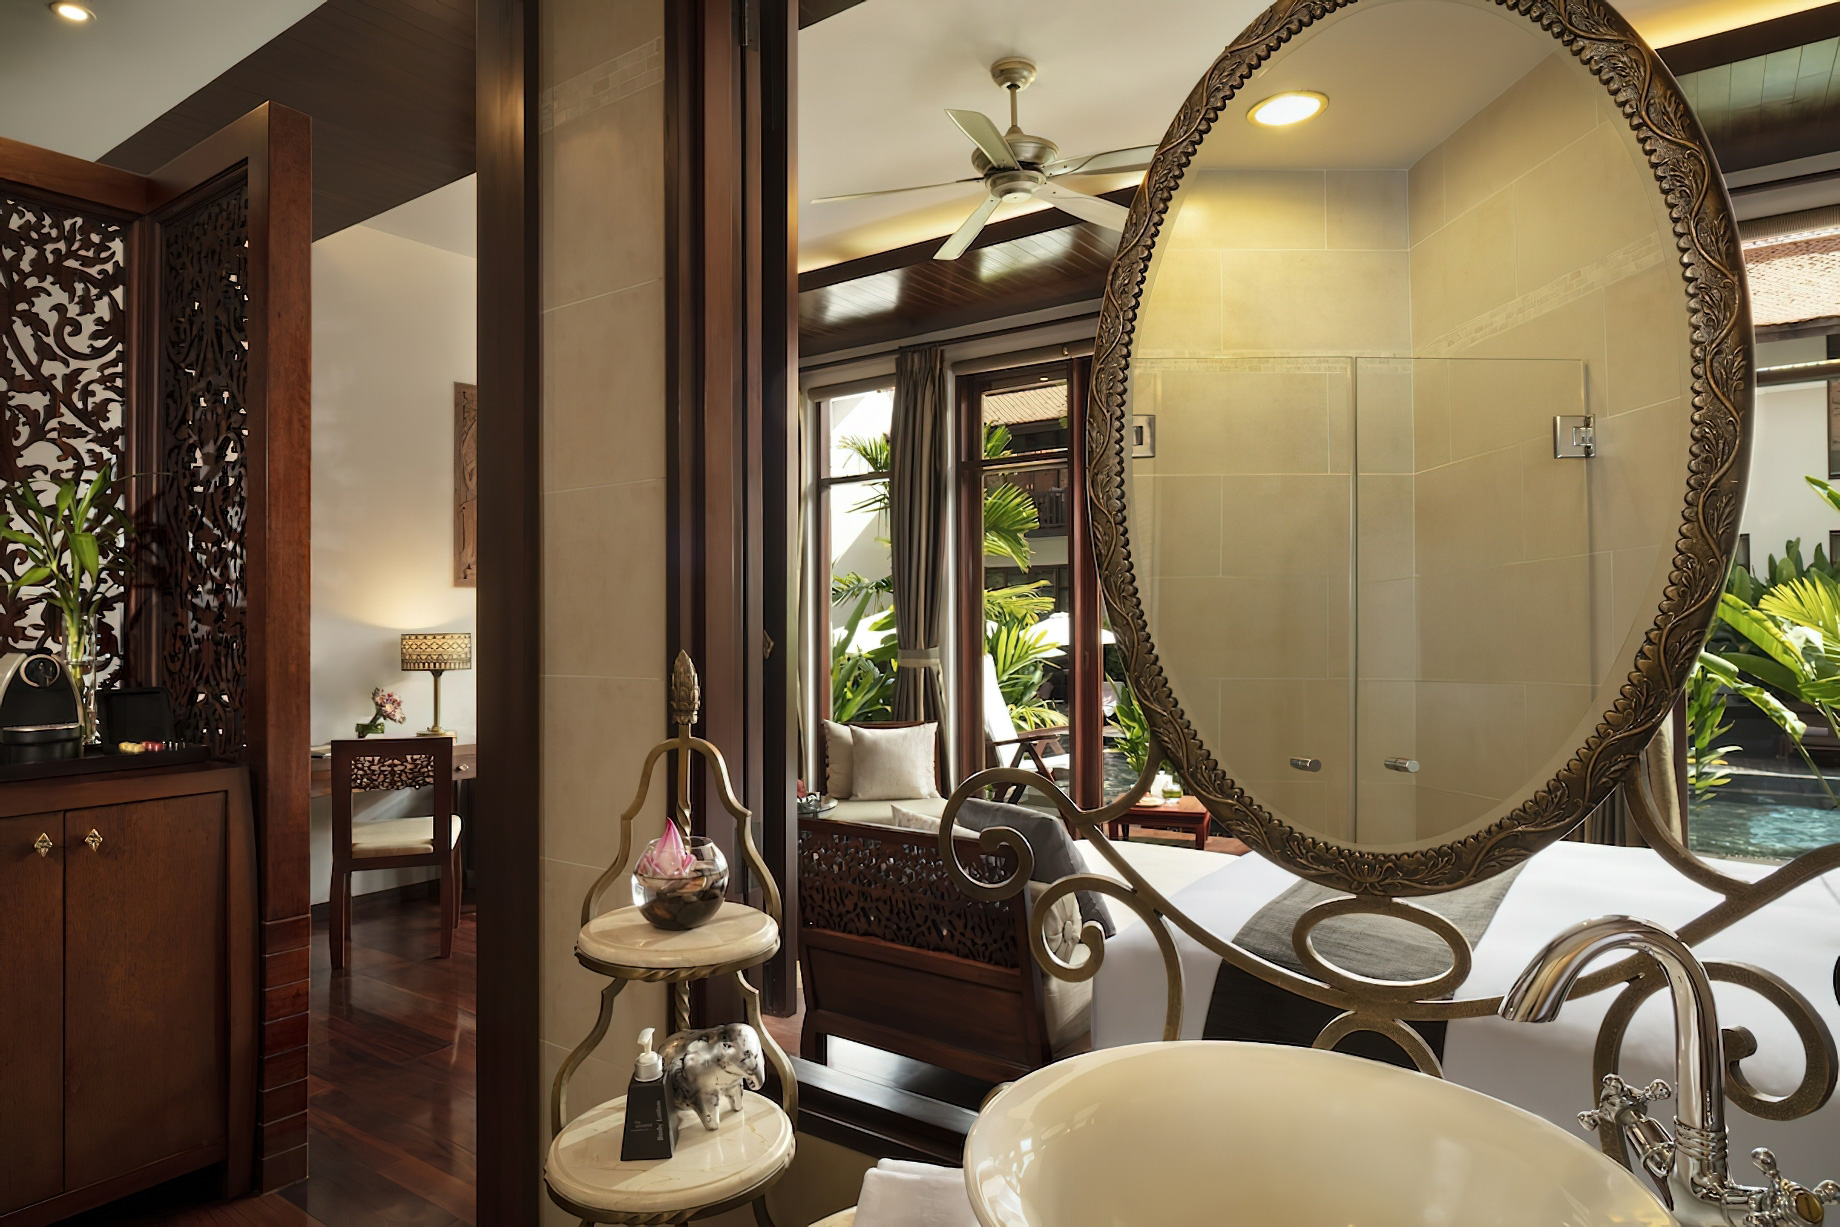 Anantara Angkor Resort – Siem Reap, Cambodia – Terrace Suite Bathroom